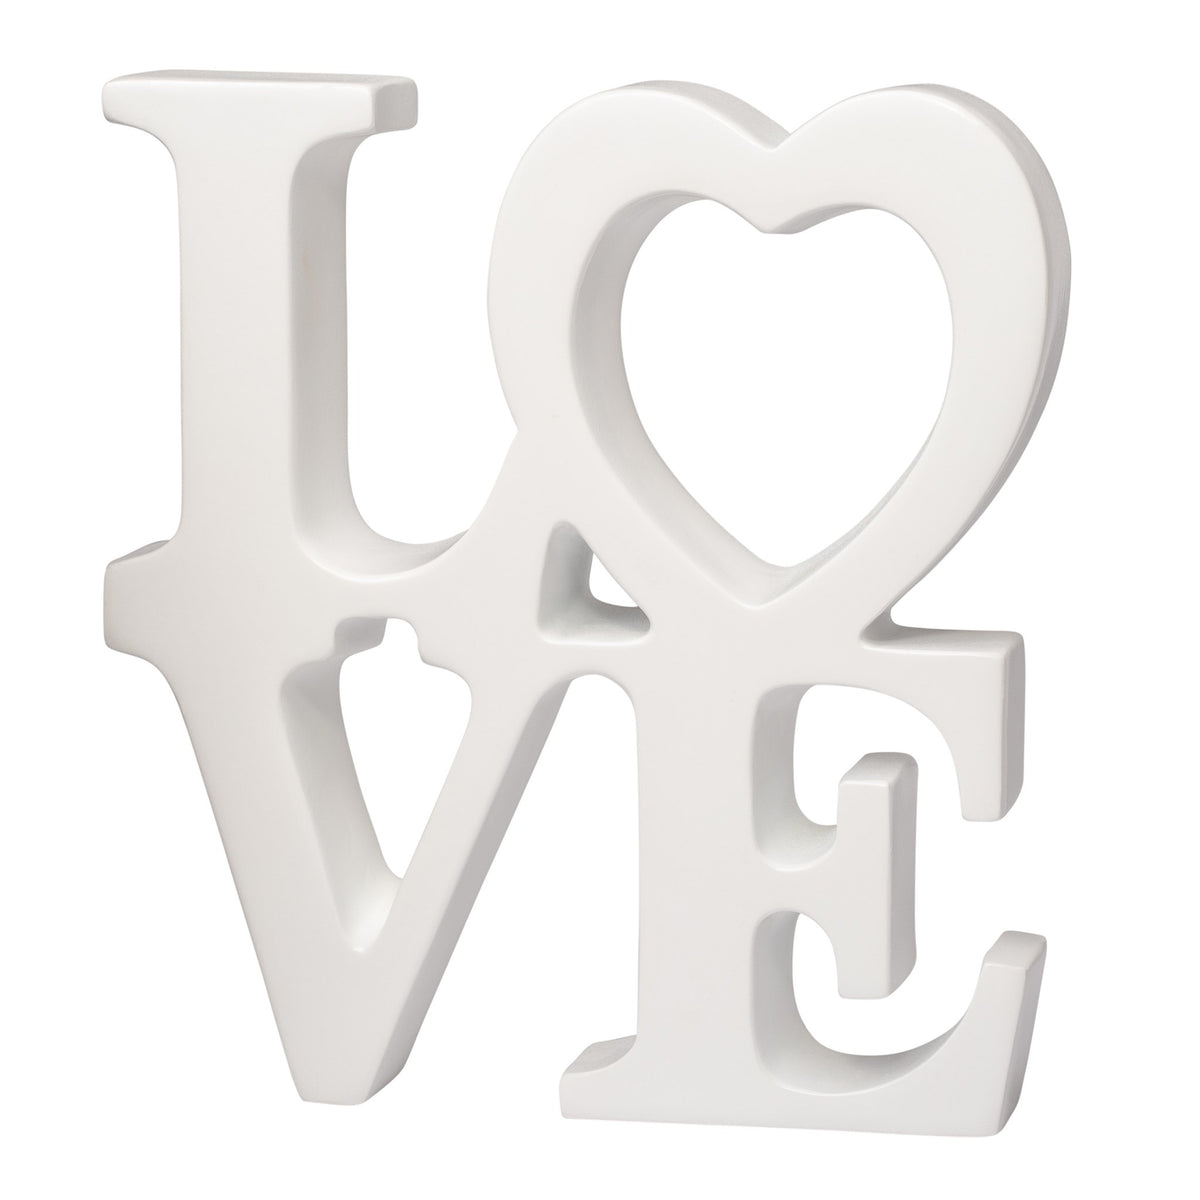 Heart Love - Resin Decor Sculpture